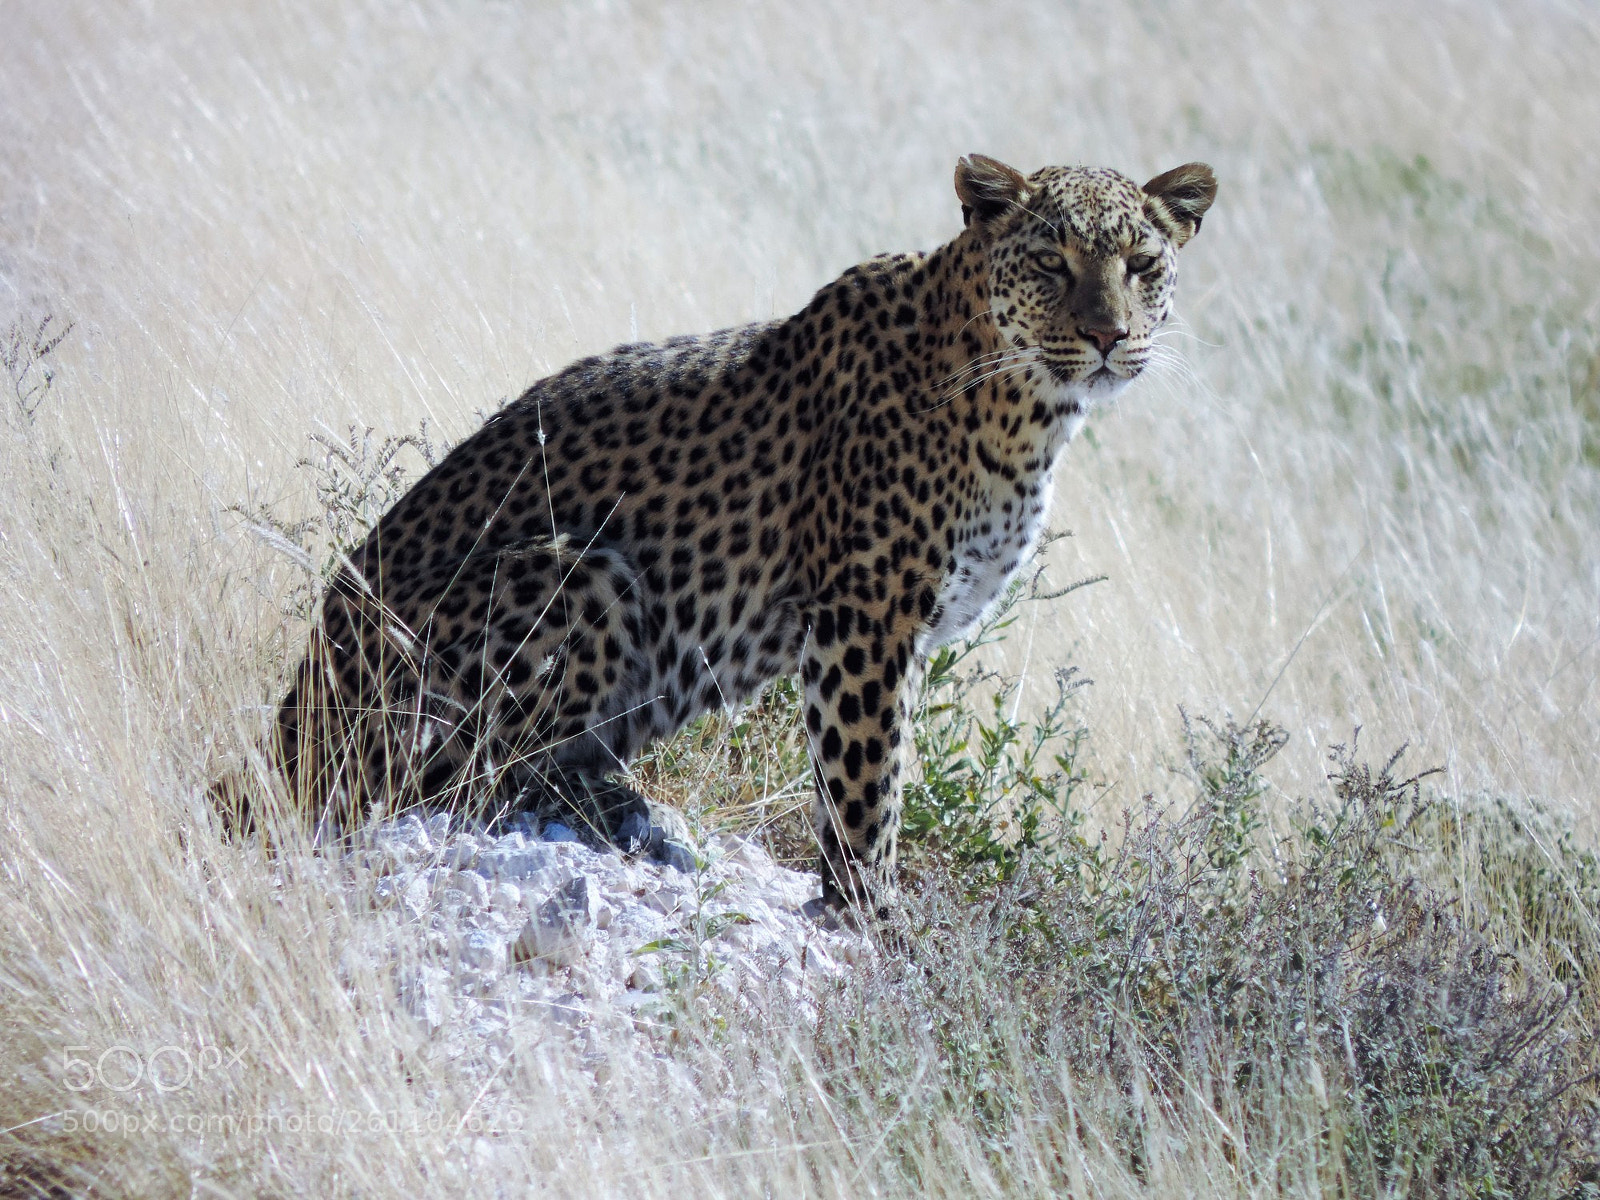 Nikon Coolpix P520 sample photo. Namibia parco etosha leopardo photography